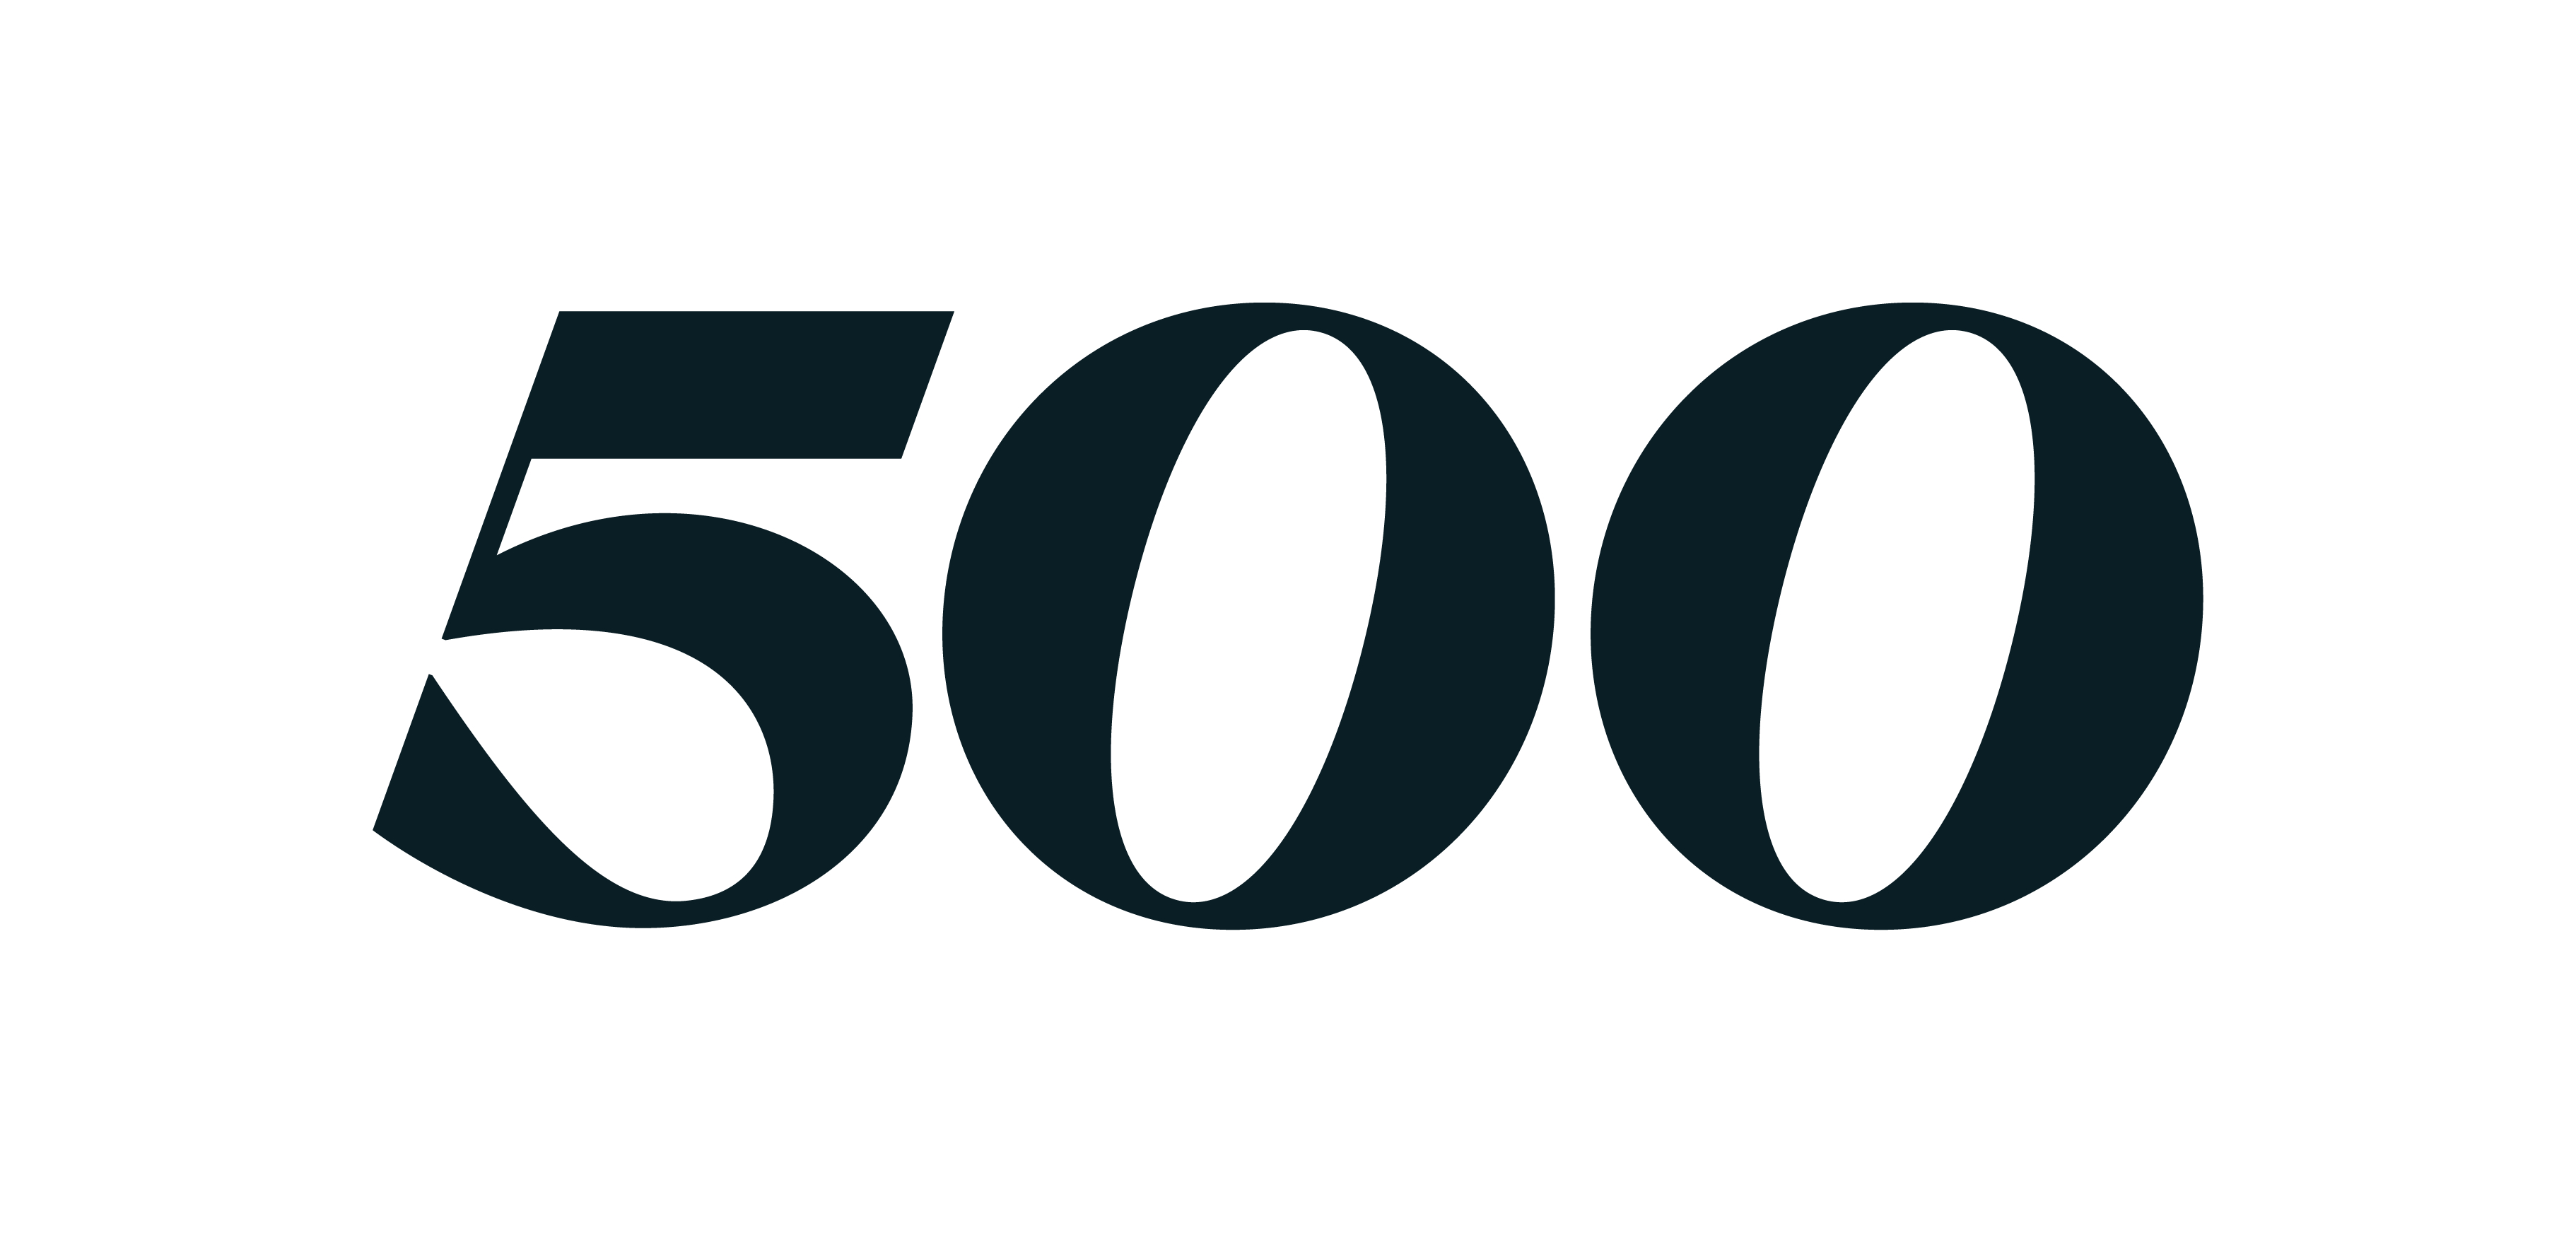 500 Global Alberta